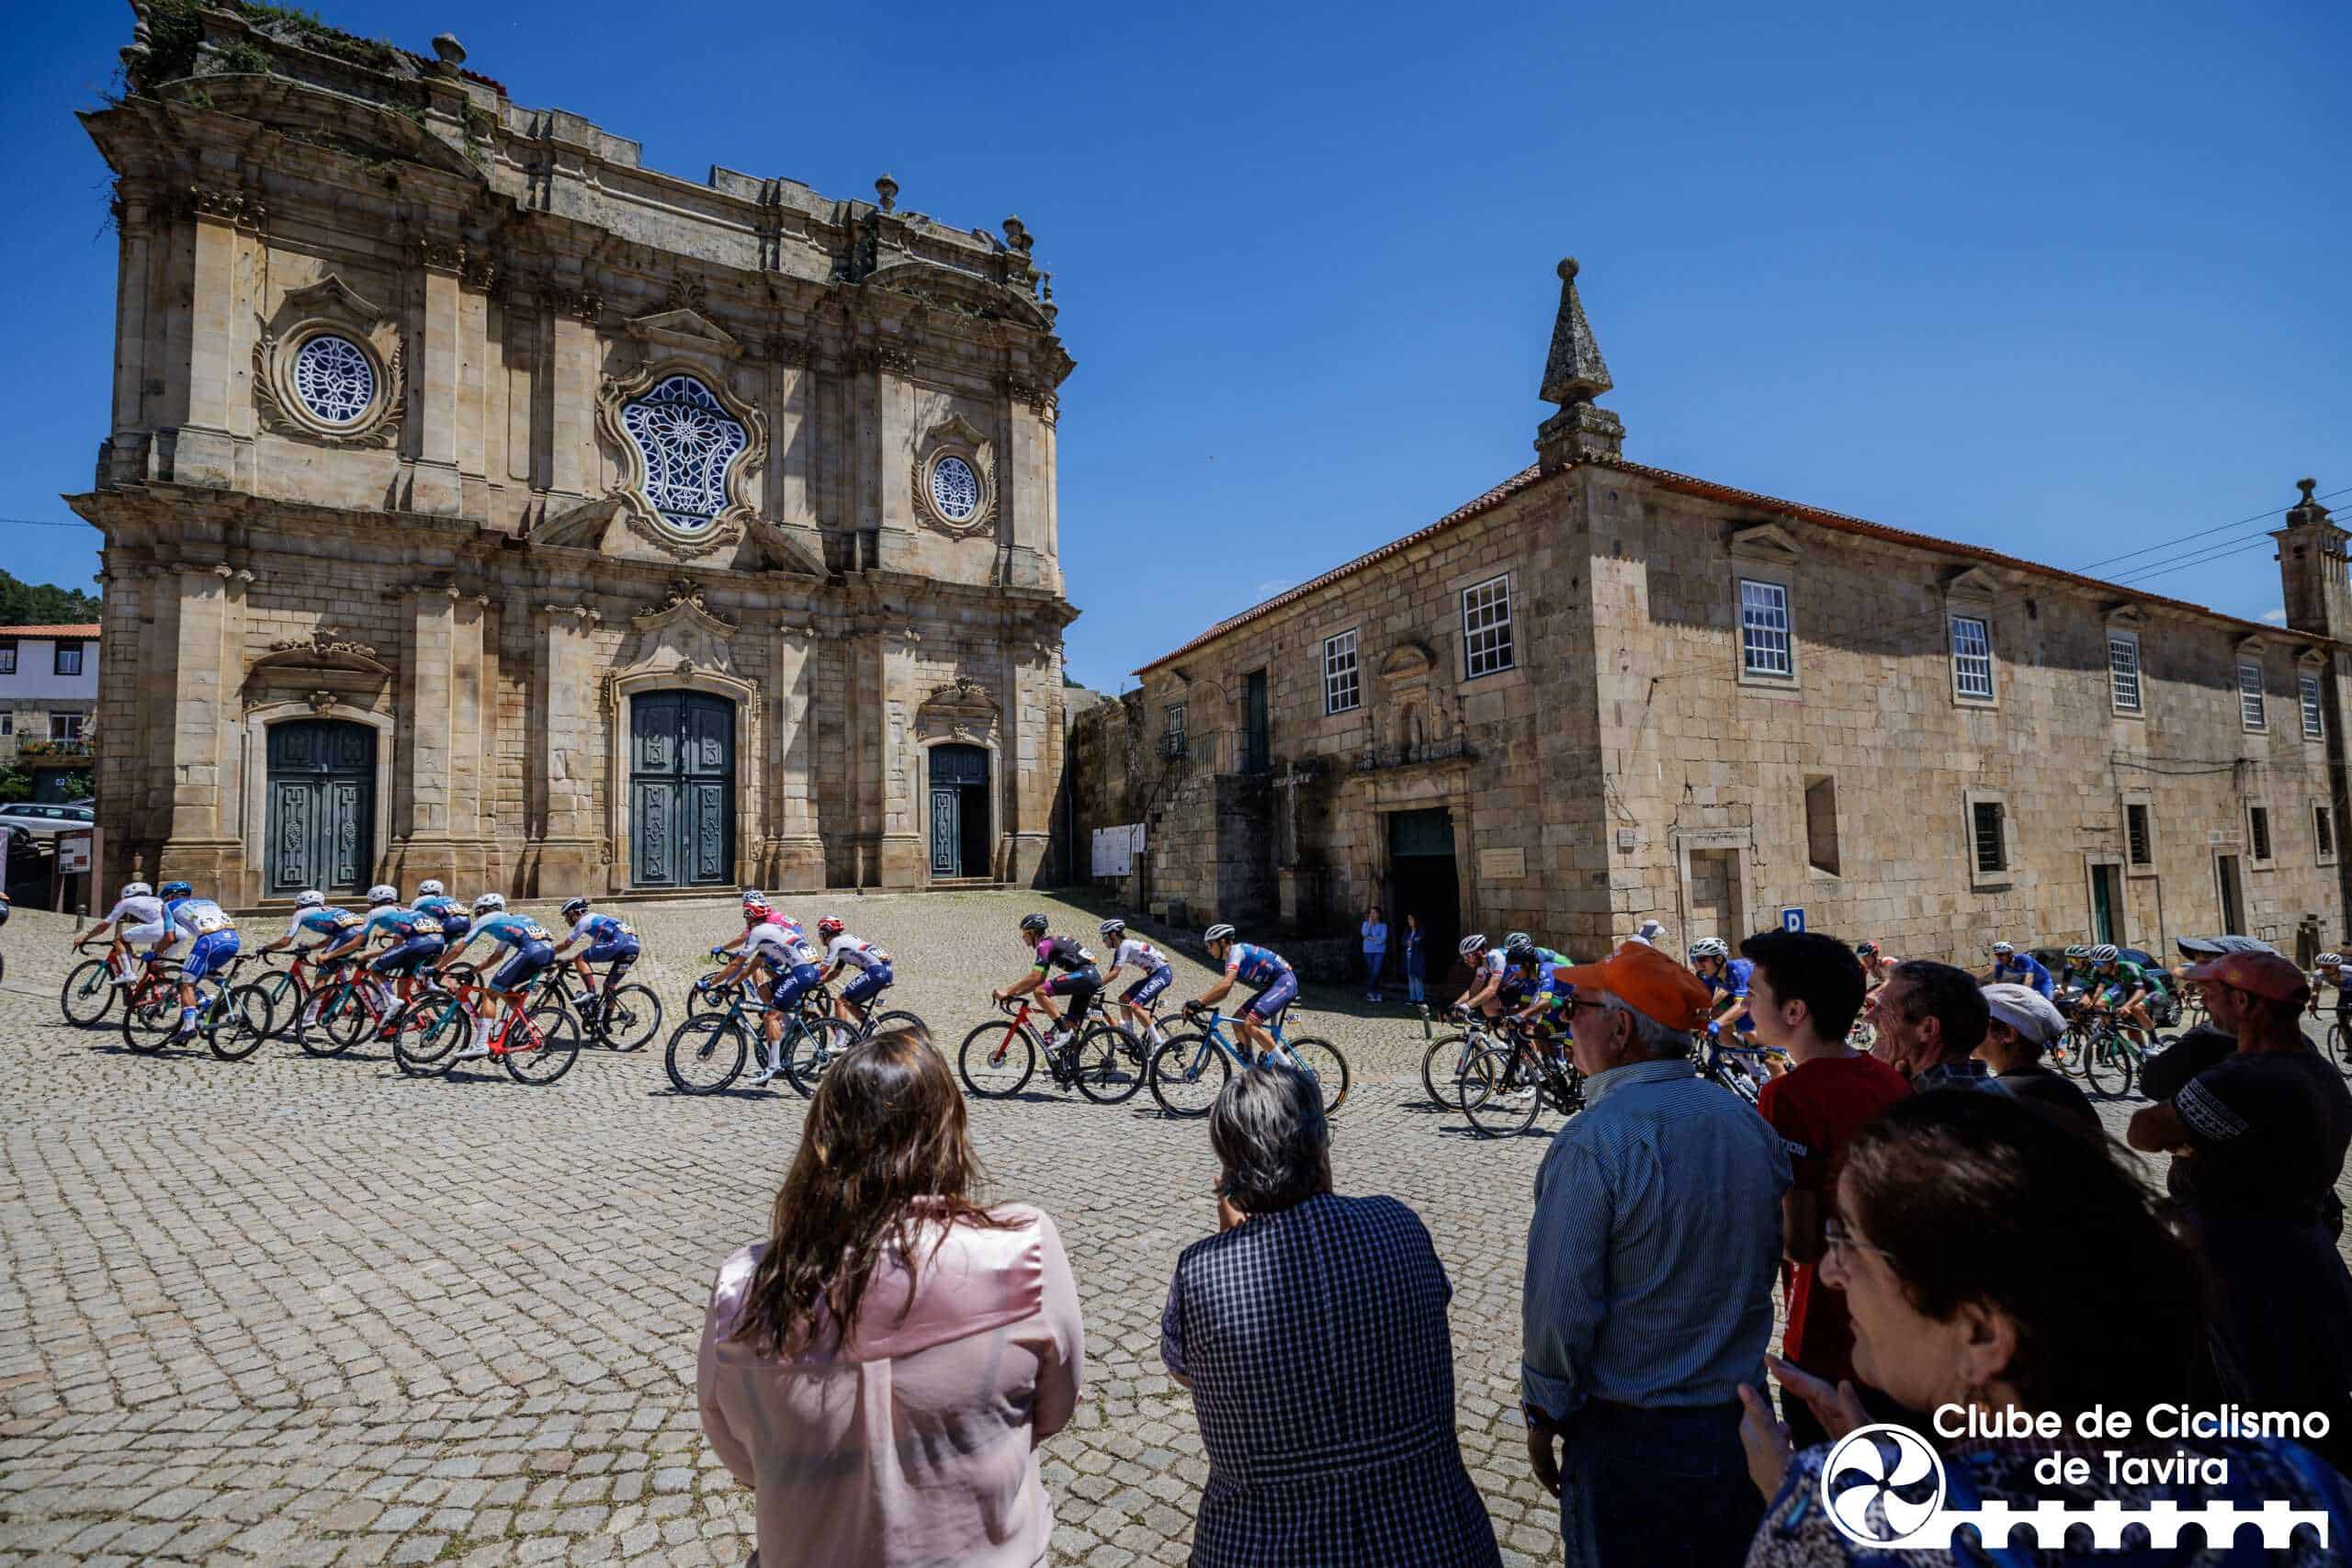 Tabuaço, 15/06/2023 - Decorreu hoje a 2ª etapa do 3º Grande Prémio de Ciclismo do Douro Internacional que percorreu estradas entre Tabuaço e Armamar.(Miguel Pereira/Global Imagens)